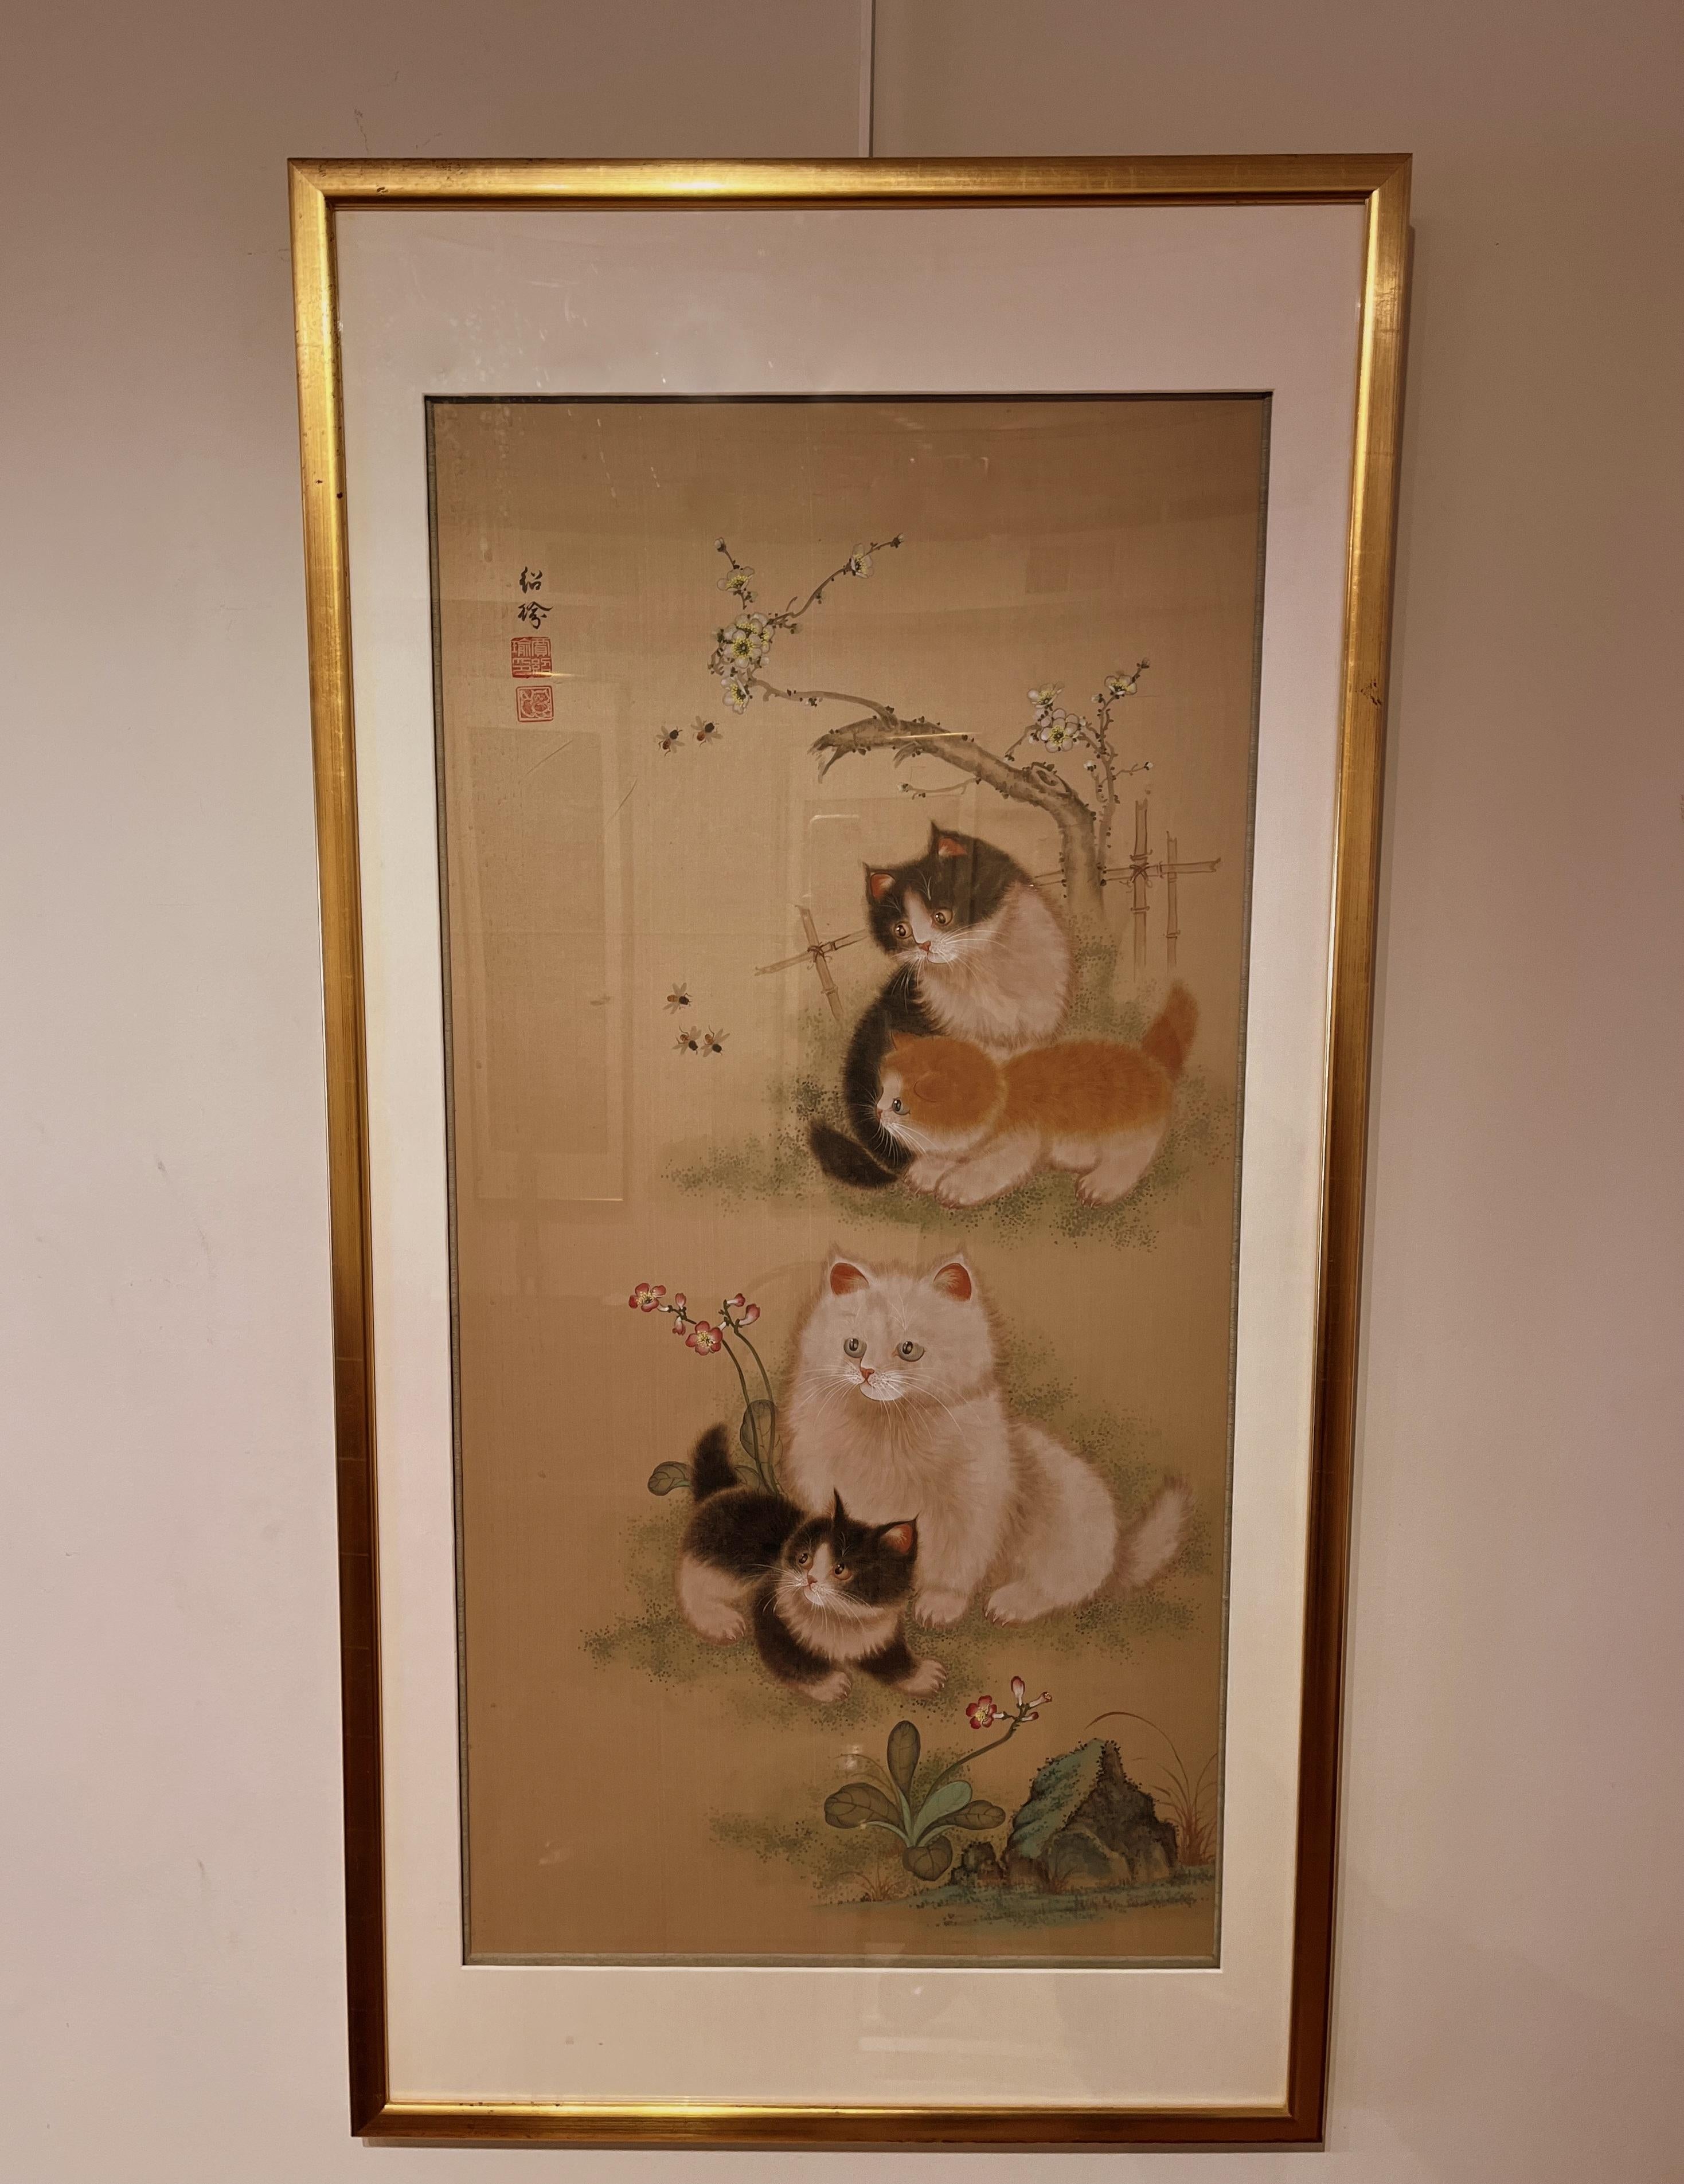 Fine peinture élégante au pinceau japonais de quatre chatons avec des abeilles et des fleurs, chaton curieux et adorable observant les abeilles.
Très finement peinte. Ca. 1900, encre et couleur sur soie. Conservation encadrée
Taille totale avec le